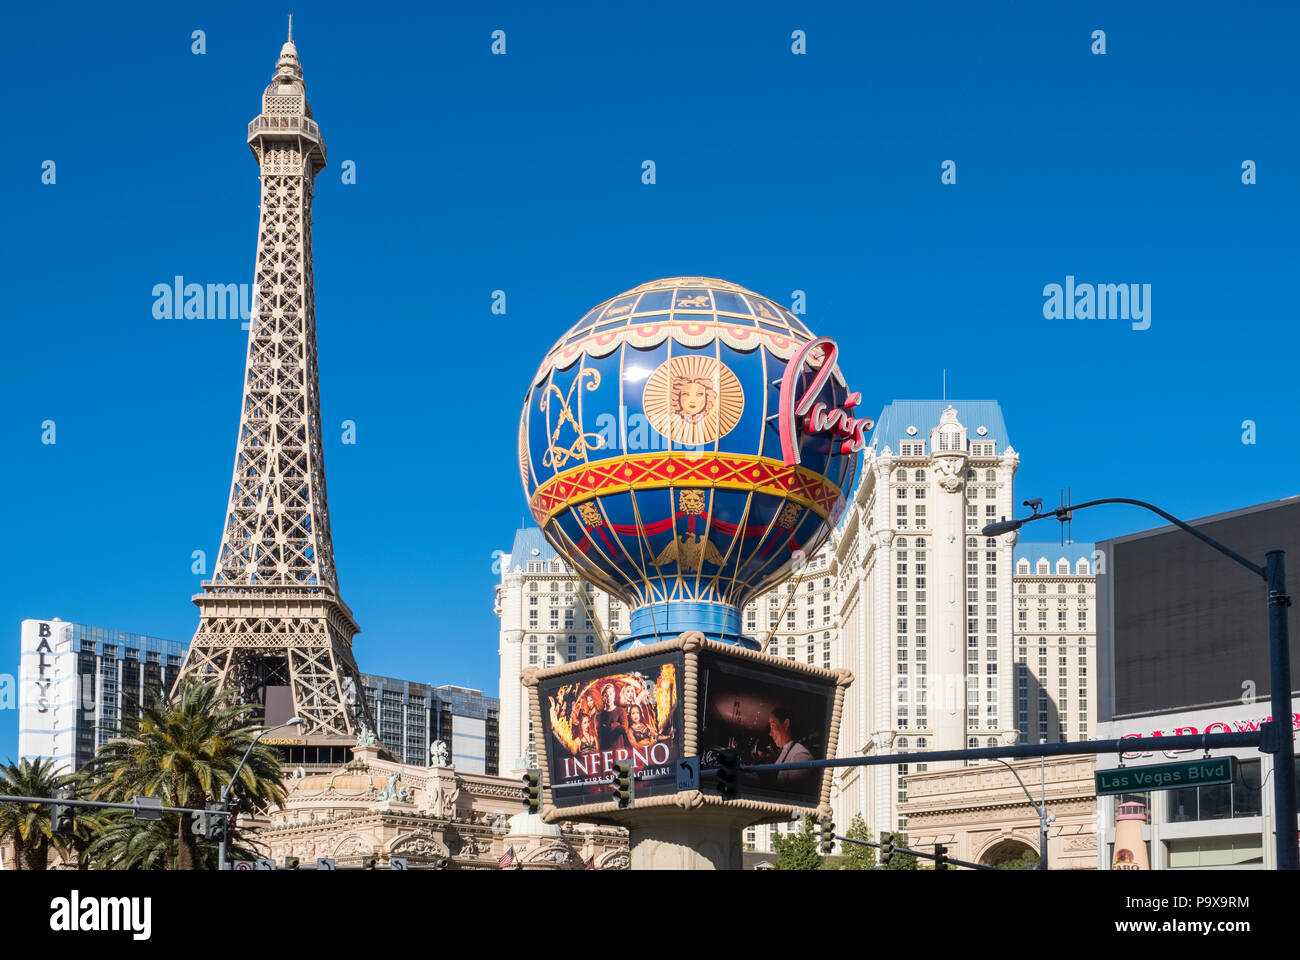 Las Vegas, Casinos, Hotels and landmarks on the Las Vegas Strip, Nevada, USA Stock Photo